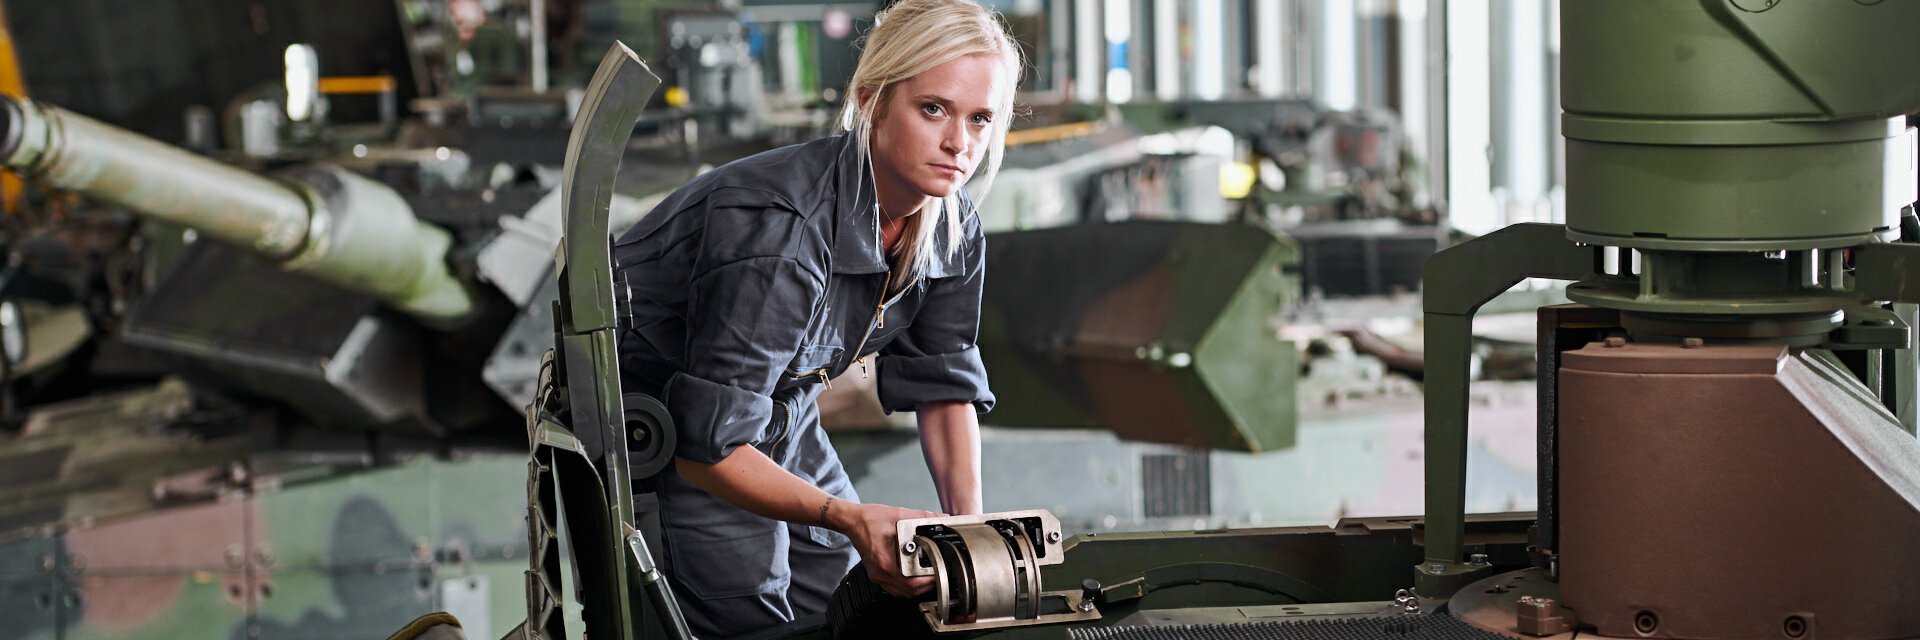 Eine Frau in grauem Arbeitskombi arbeitet an einem militärischen Fahrzeug